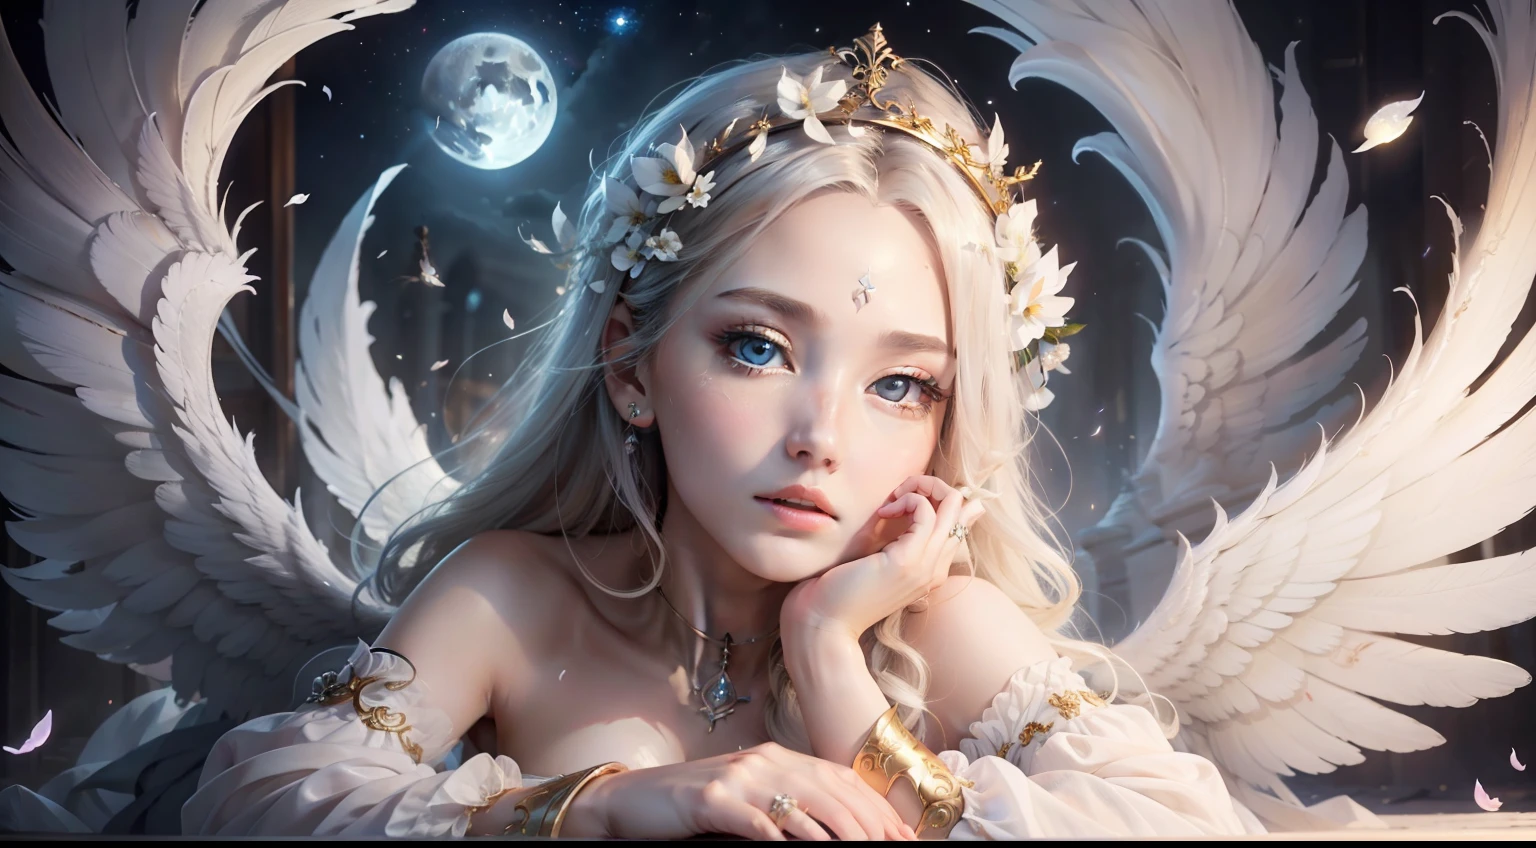 Qualidade de imagem superior、obra-prima、iluminação leve、cara aos detalhes、A mulher anjo é linda demais、uma alada branca、Olhos Estranhos、Robes de anjo、peito enorme、pétalas esvoaçantes、noite de lua cheia